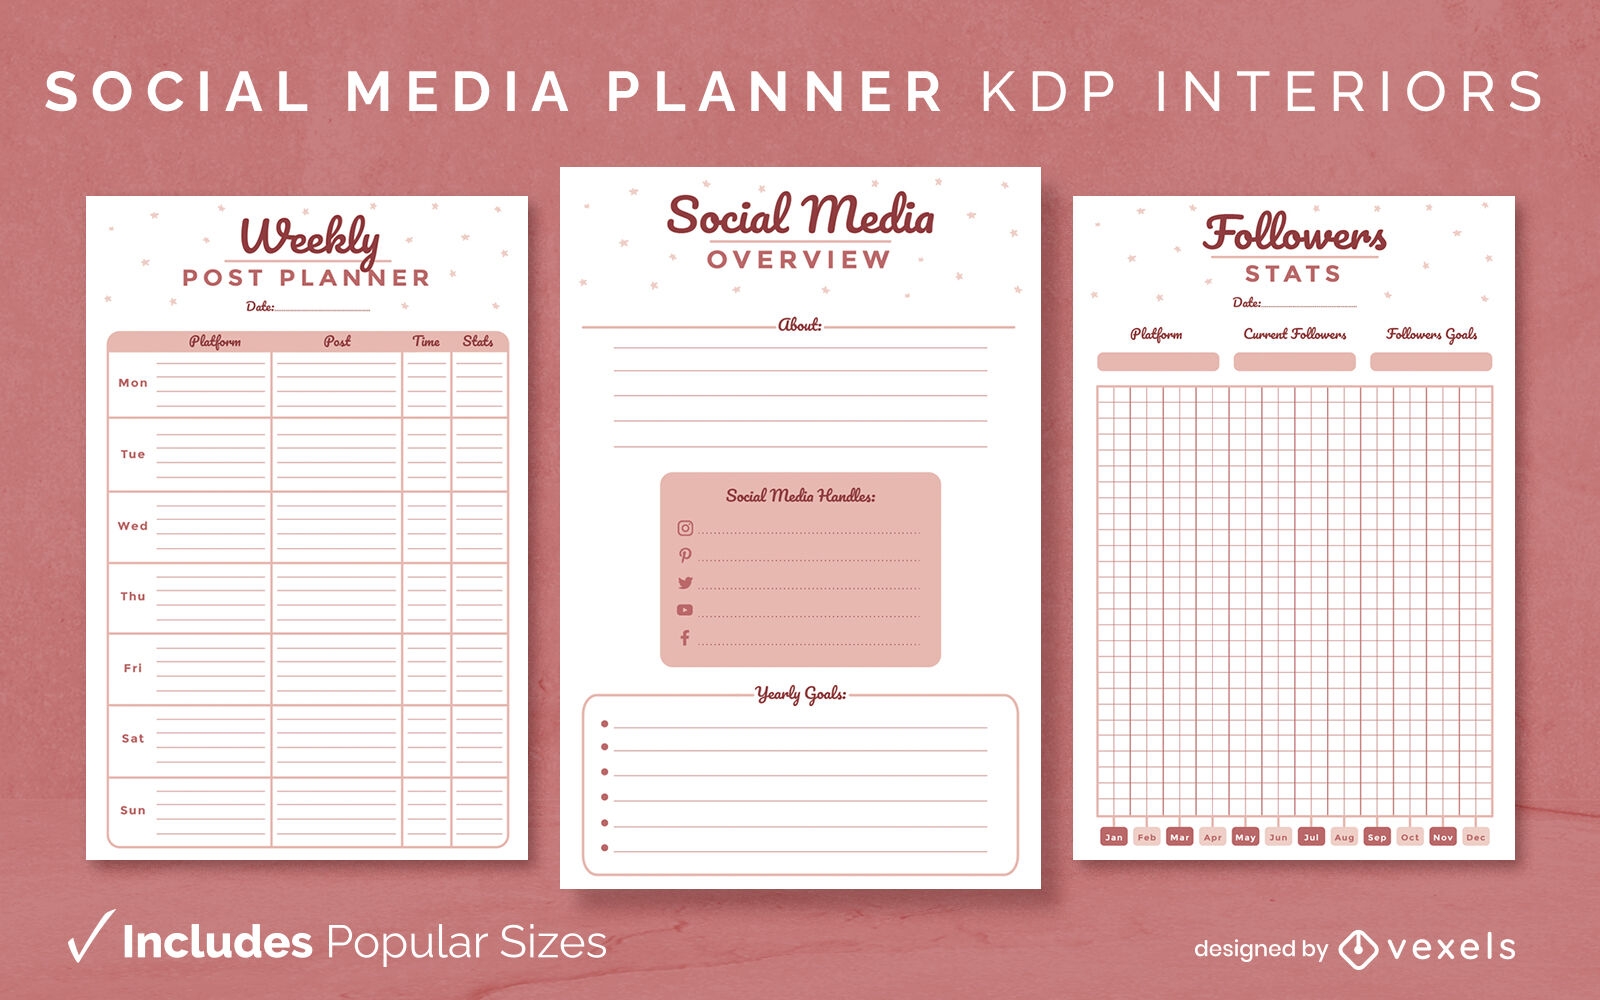 Modelo de design de planejador vermelho de mídia social KDP